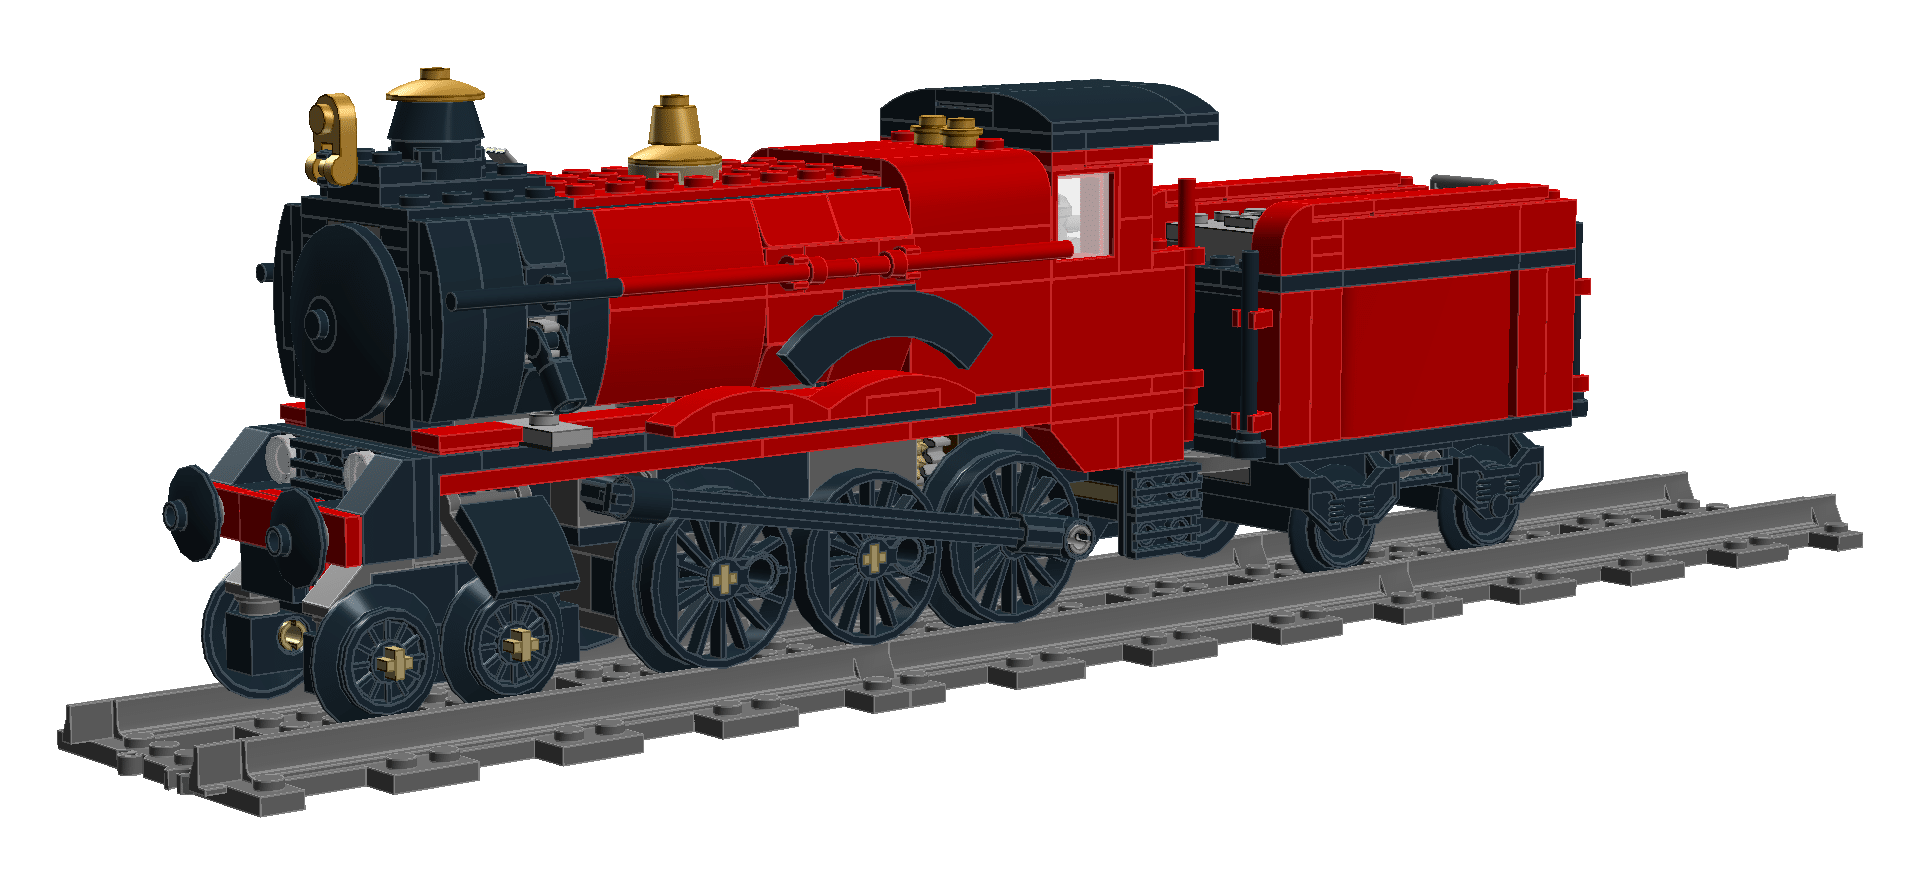 LEGO 2018 Hogwarts Express motorized & running! 75955 